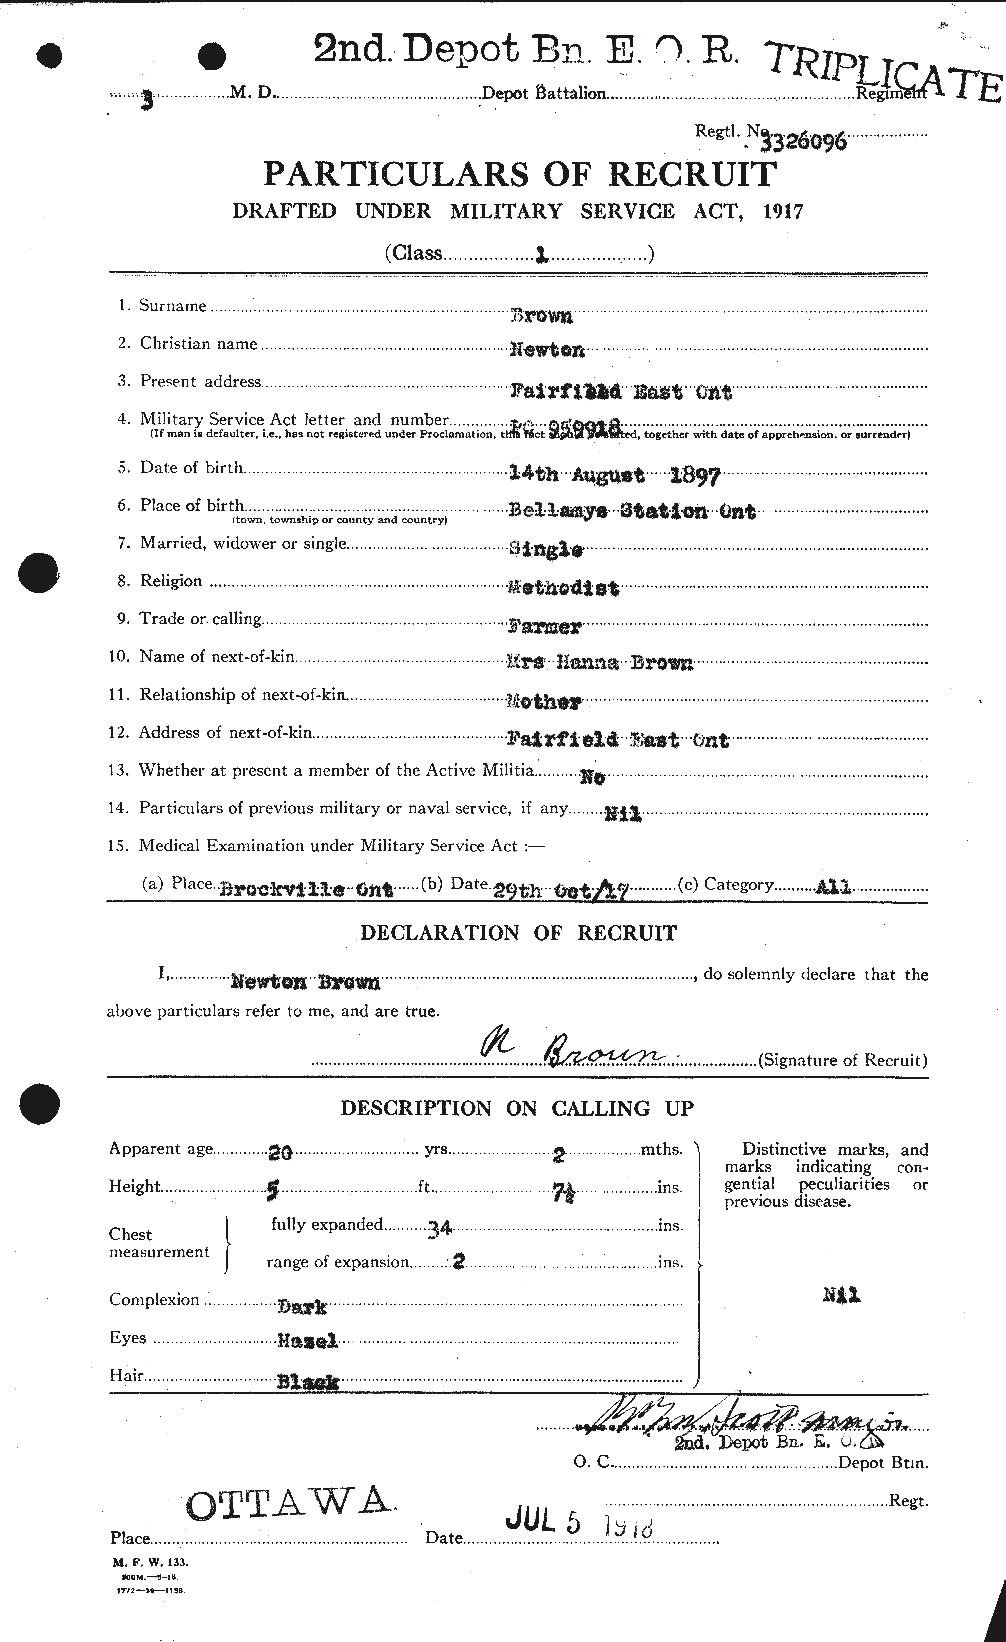 Dossiers du Personnel de la Première Guerre mondiale - CEC 267097a